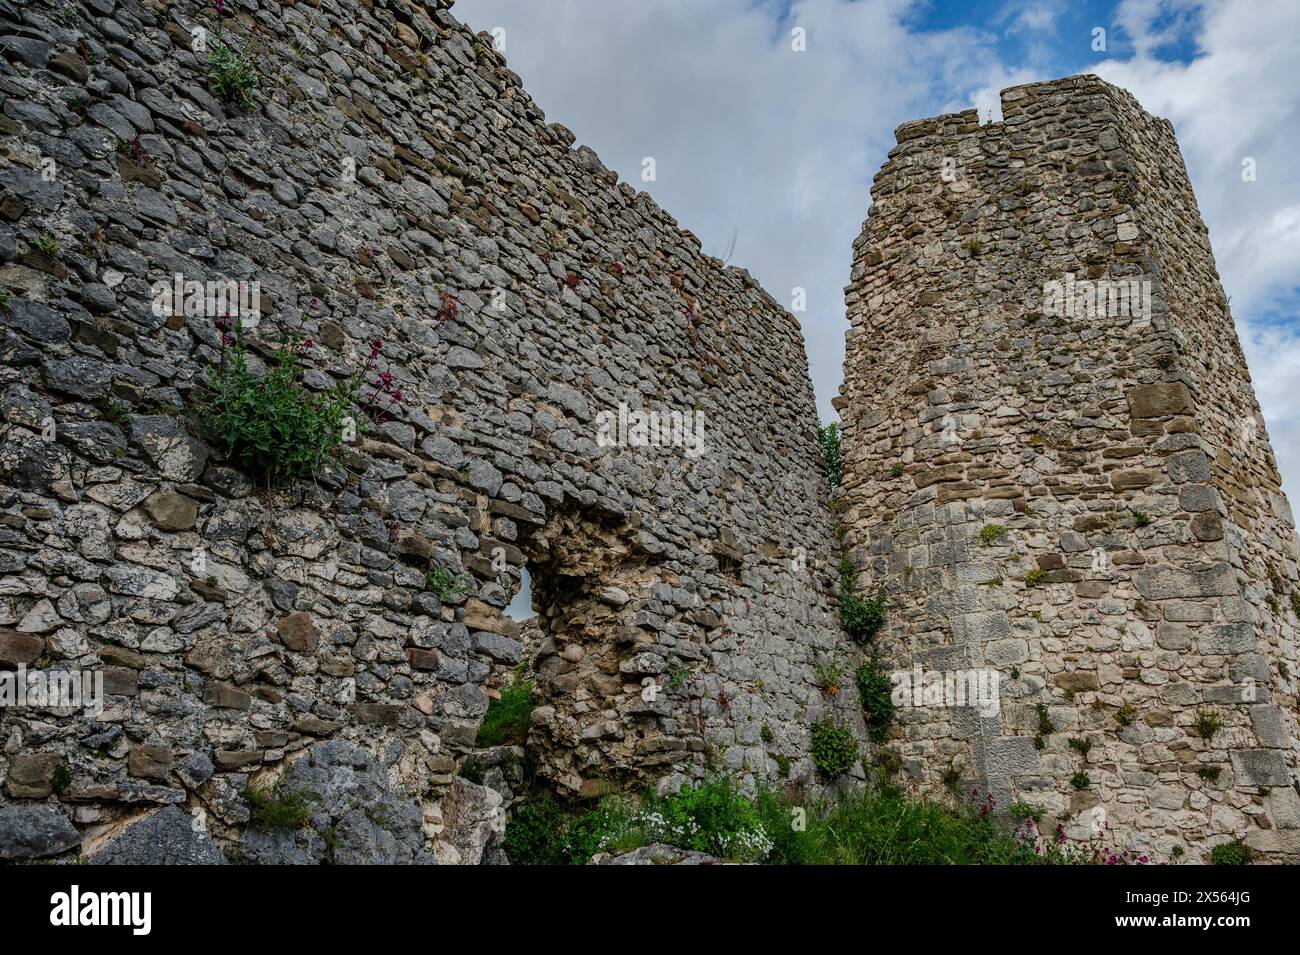 Le château d'Alfedena est les ruines d'un château datant du 10ème-11ème siècle dans la municipalité italienne du même nom dont un octogone Banque D'Images